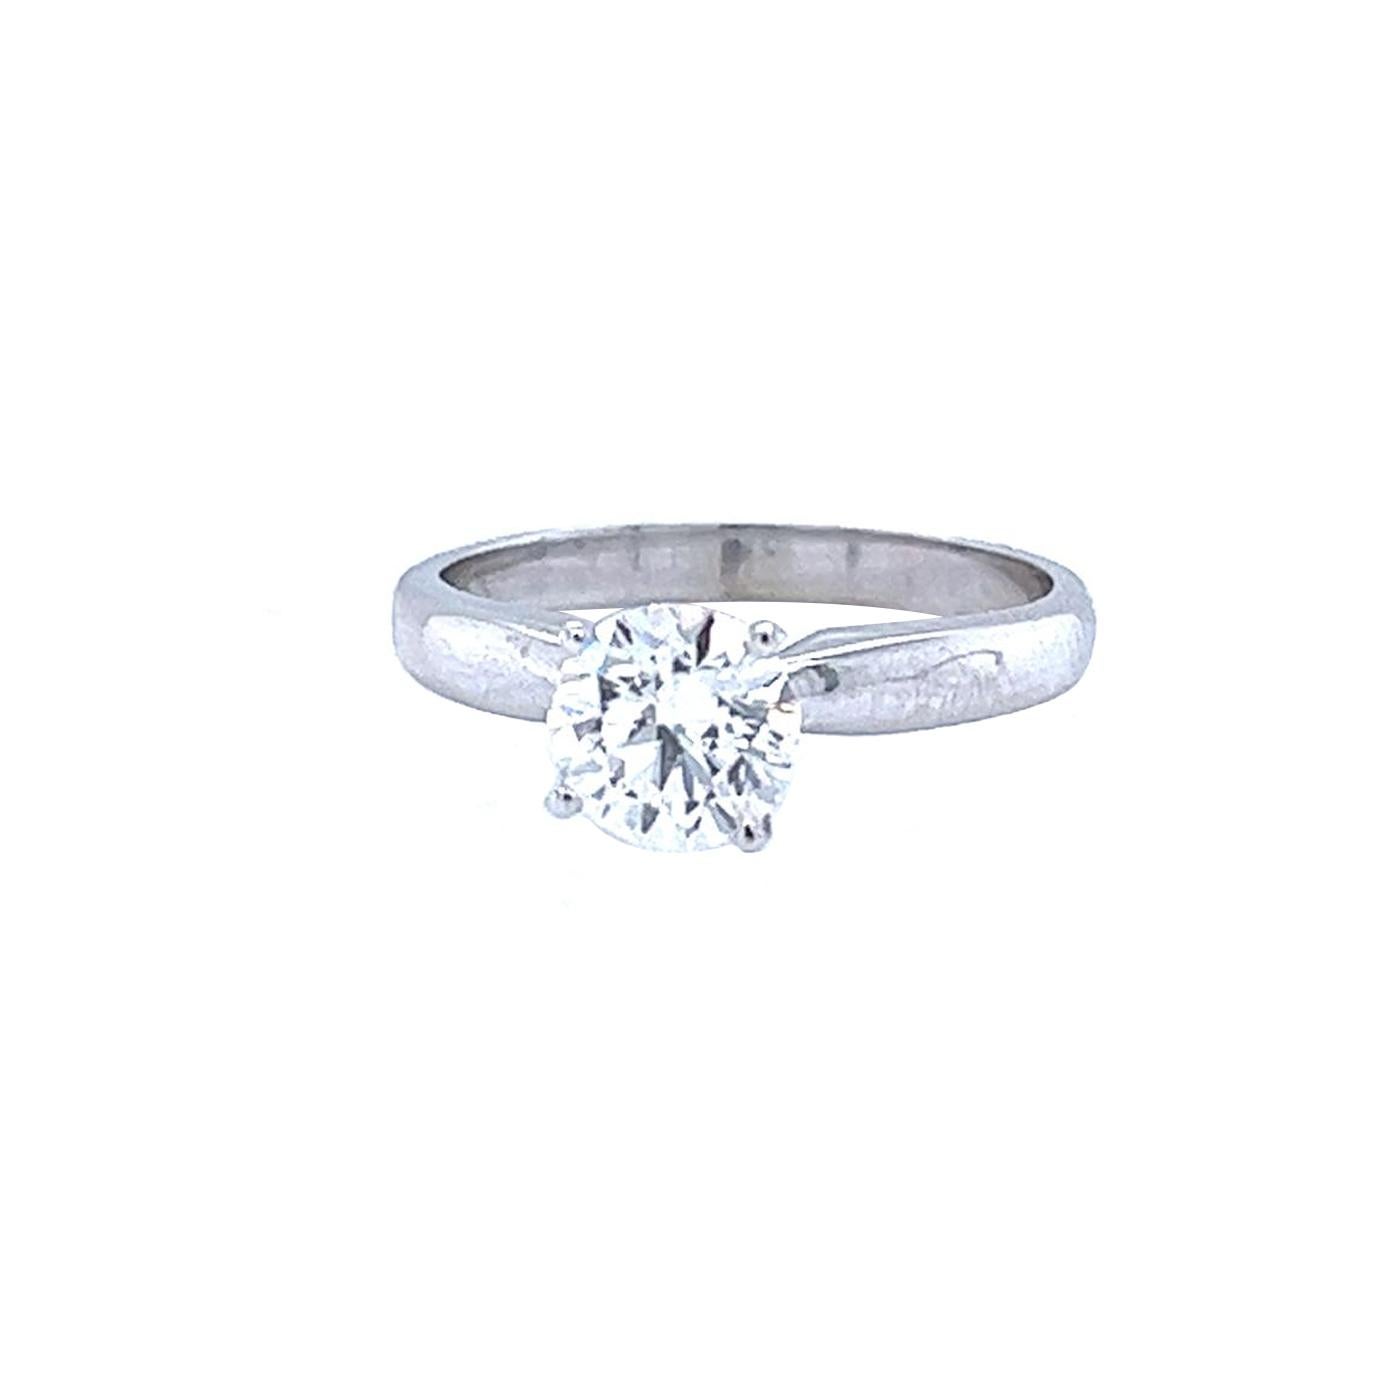 Natürlicher Diamantring mit Rundschliff. Das Tiffany Style 14K Diamantdesign des Rings zeigt maximales Funkeln und Brillanz. Dieser luxuriöse Diamantring ist ein absoluter Hingucker! Schöner Diamant in der Mitte in 14K Gold montiert. Ein Maximum an